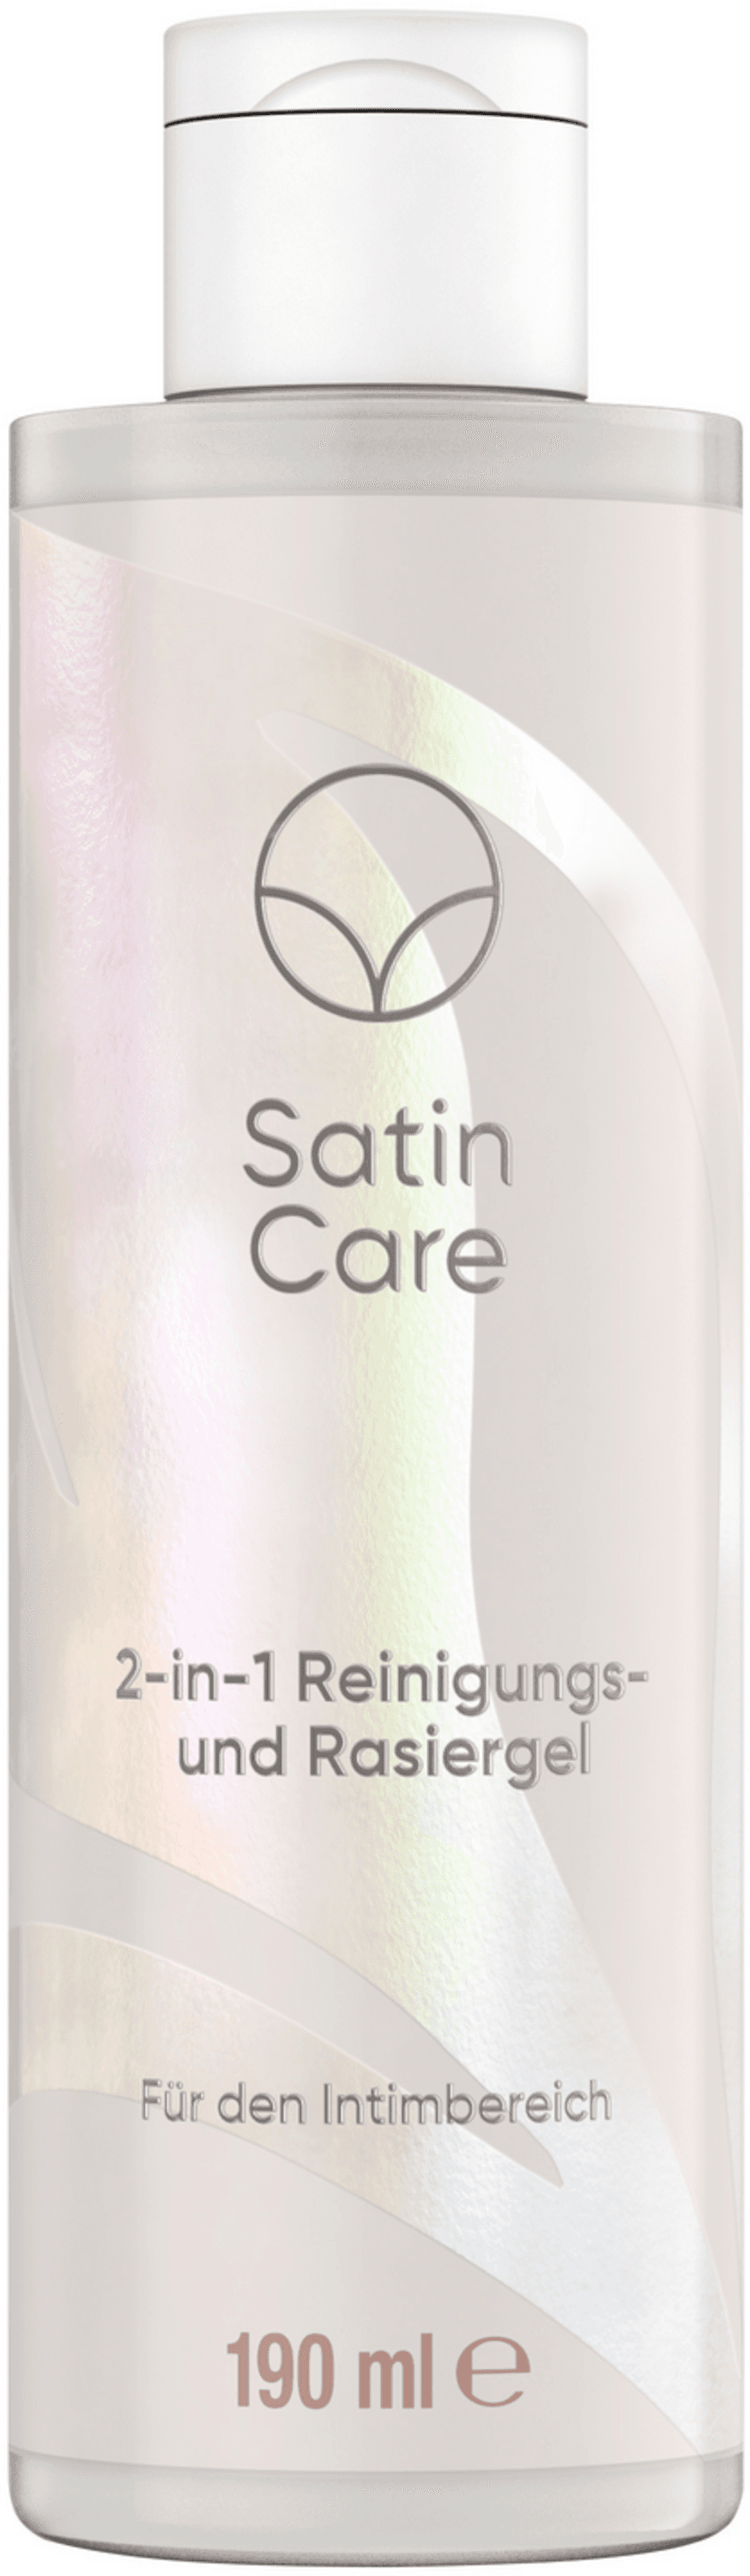 Gillette - Satin Care Intimpflege 2-in1 Reinigungs- und Rasiergel 190 ml